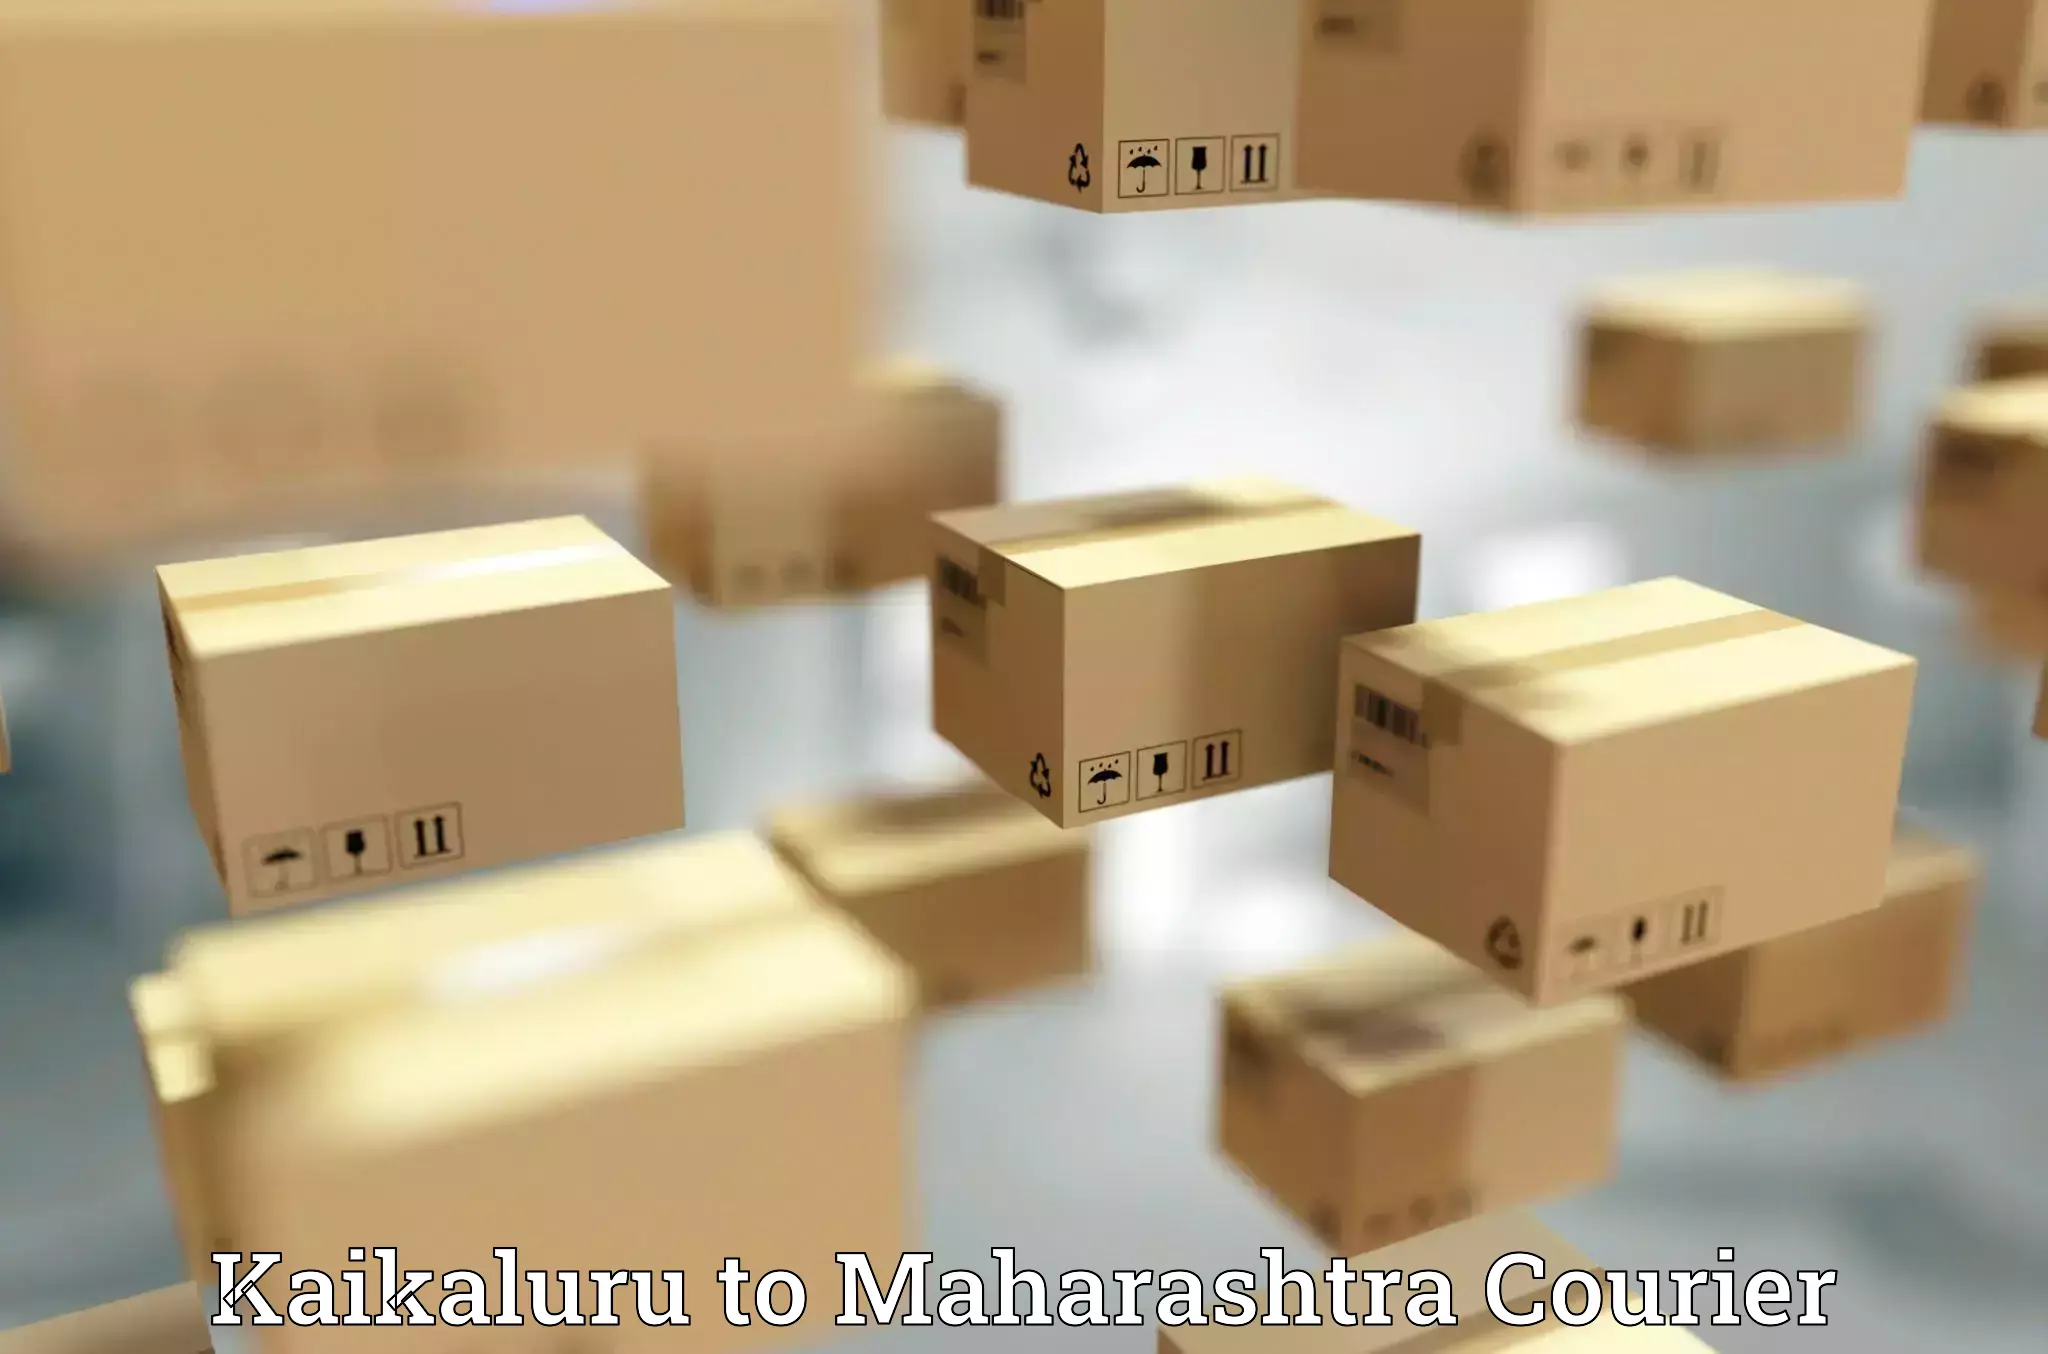 Doorstep delivery service Kaikaluru to Maharashtra